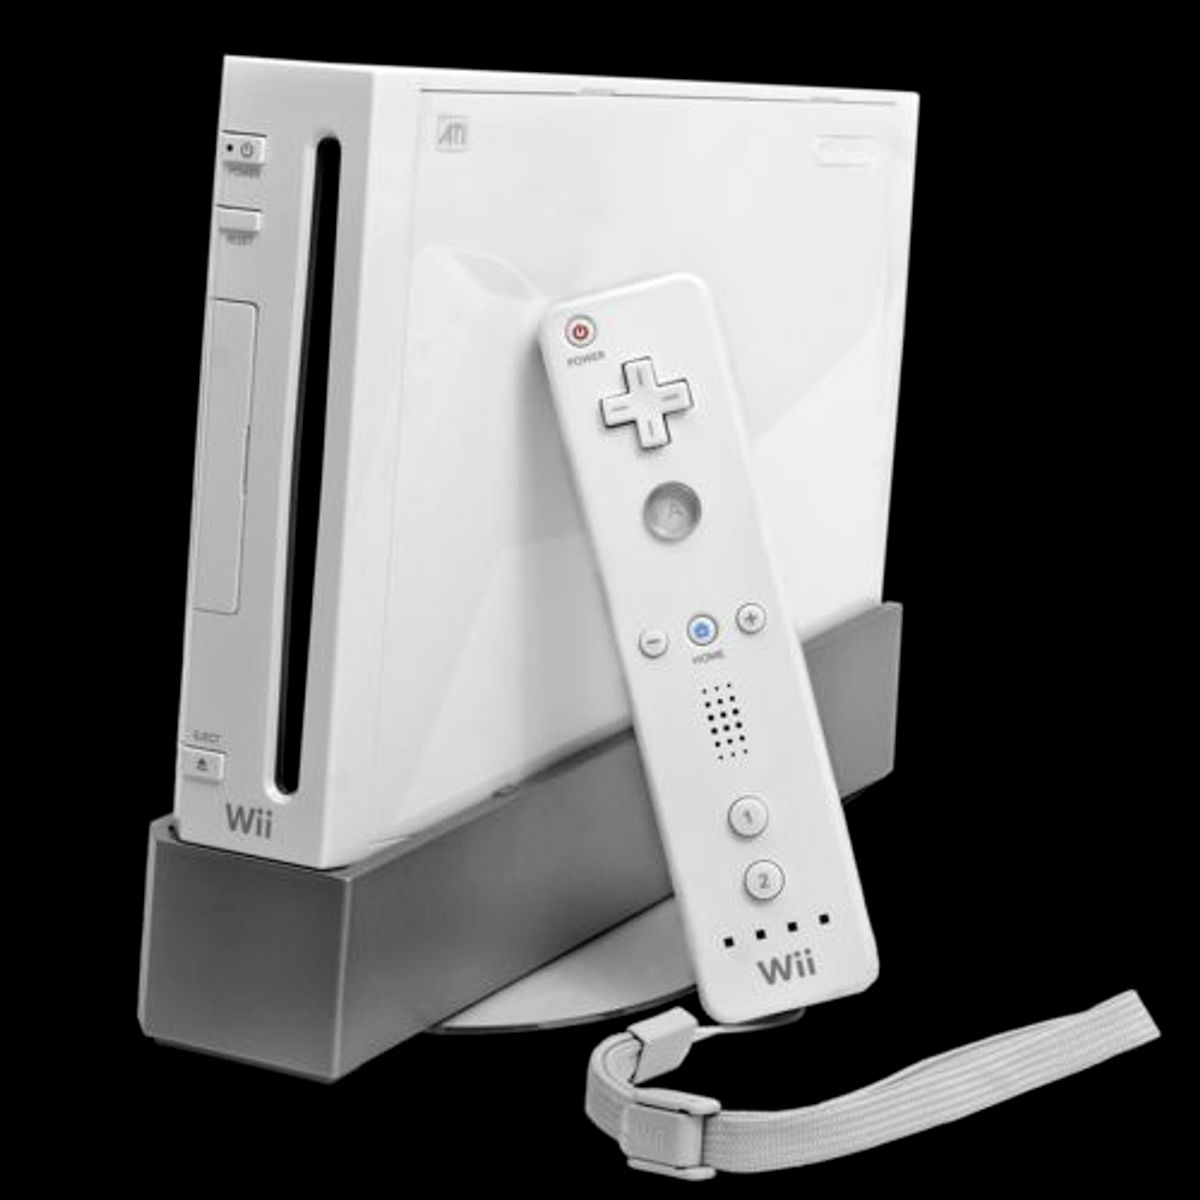 Nintendo Wii Usado